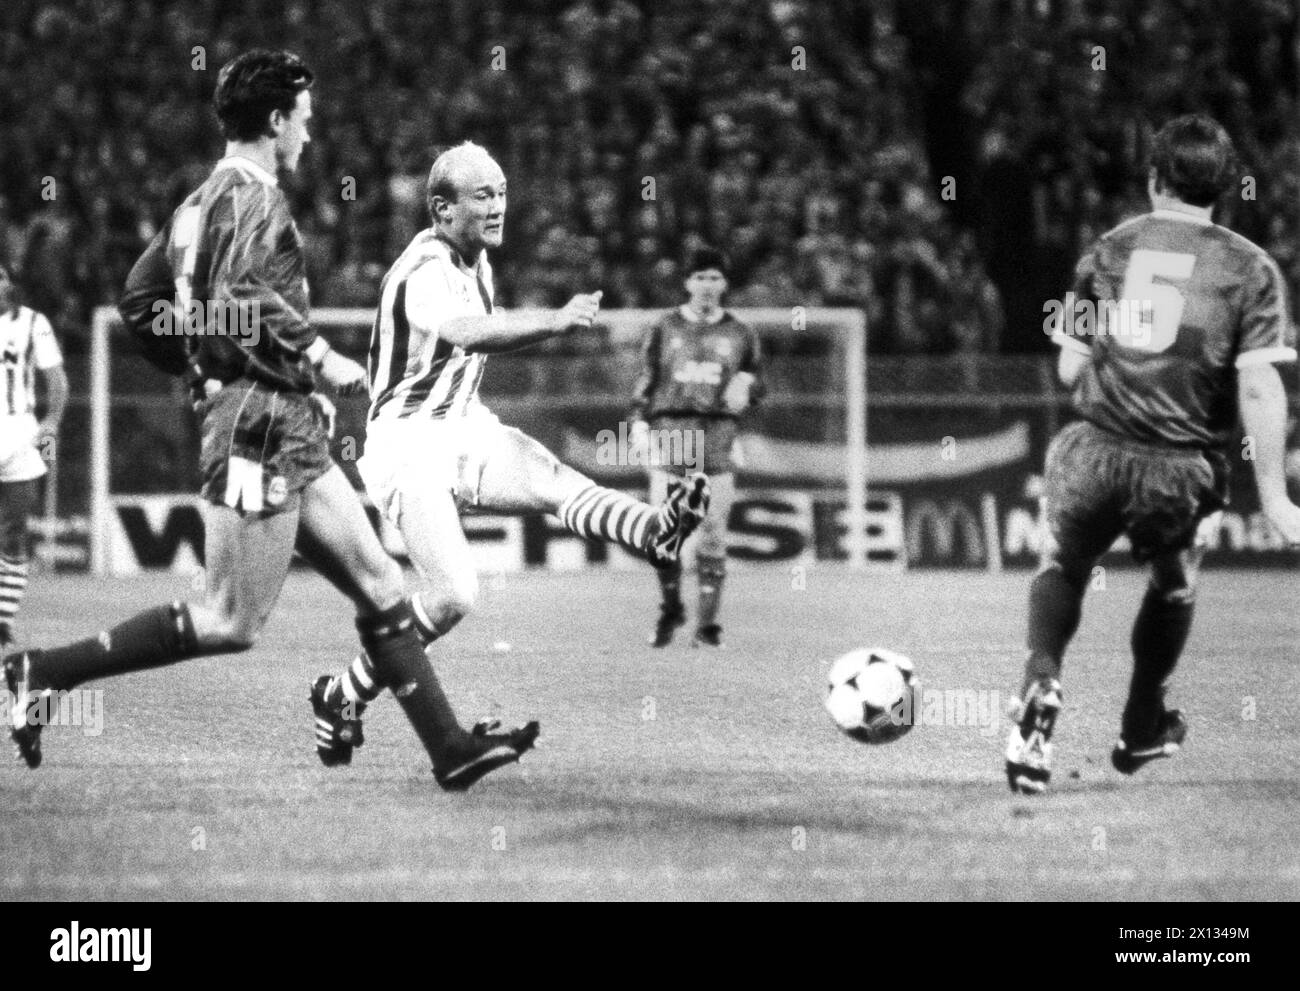 Vienna il 27 settembre 1989: Partita tra Rapid e Aberdeen alla Coppa UEFA di Vienna. Nella foto: Keglevits (c., Rapid) e Alex McLeish (r., Aberdeen). - 19890527 PD0002 - Rechteinfo: Diritti gestiti (RM) Foto Stock